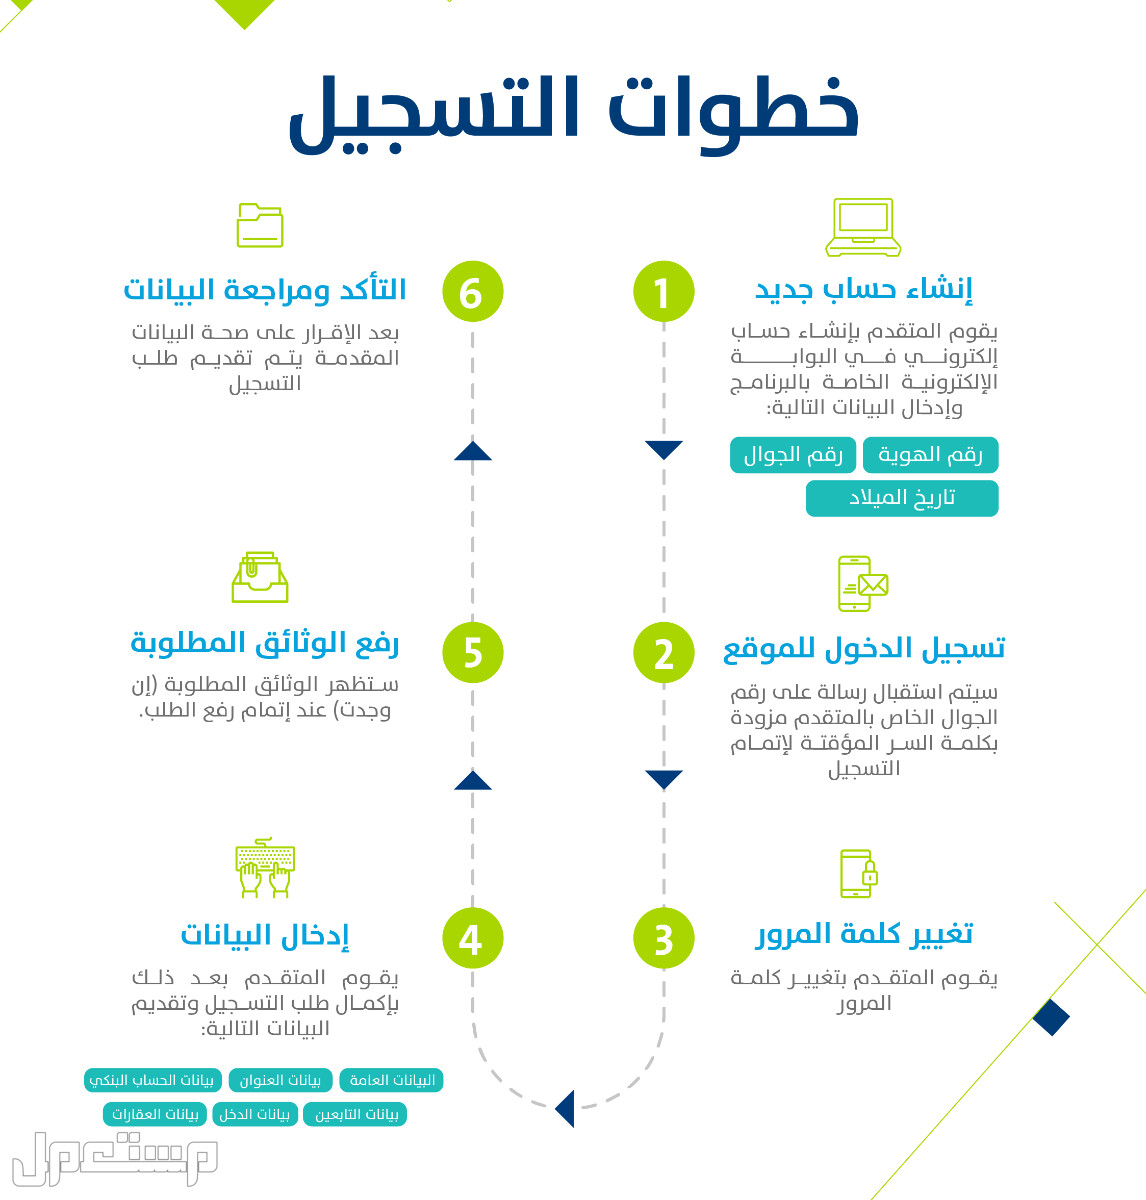 تعرف على كيفية التسجيل في حساب المواطن عقب تمديد الدعم الإضافي 1444 بالخطوات في الكويت خطوات التسجيل